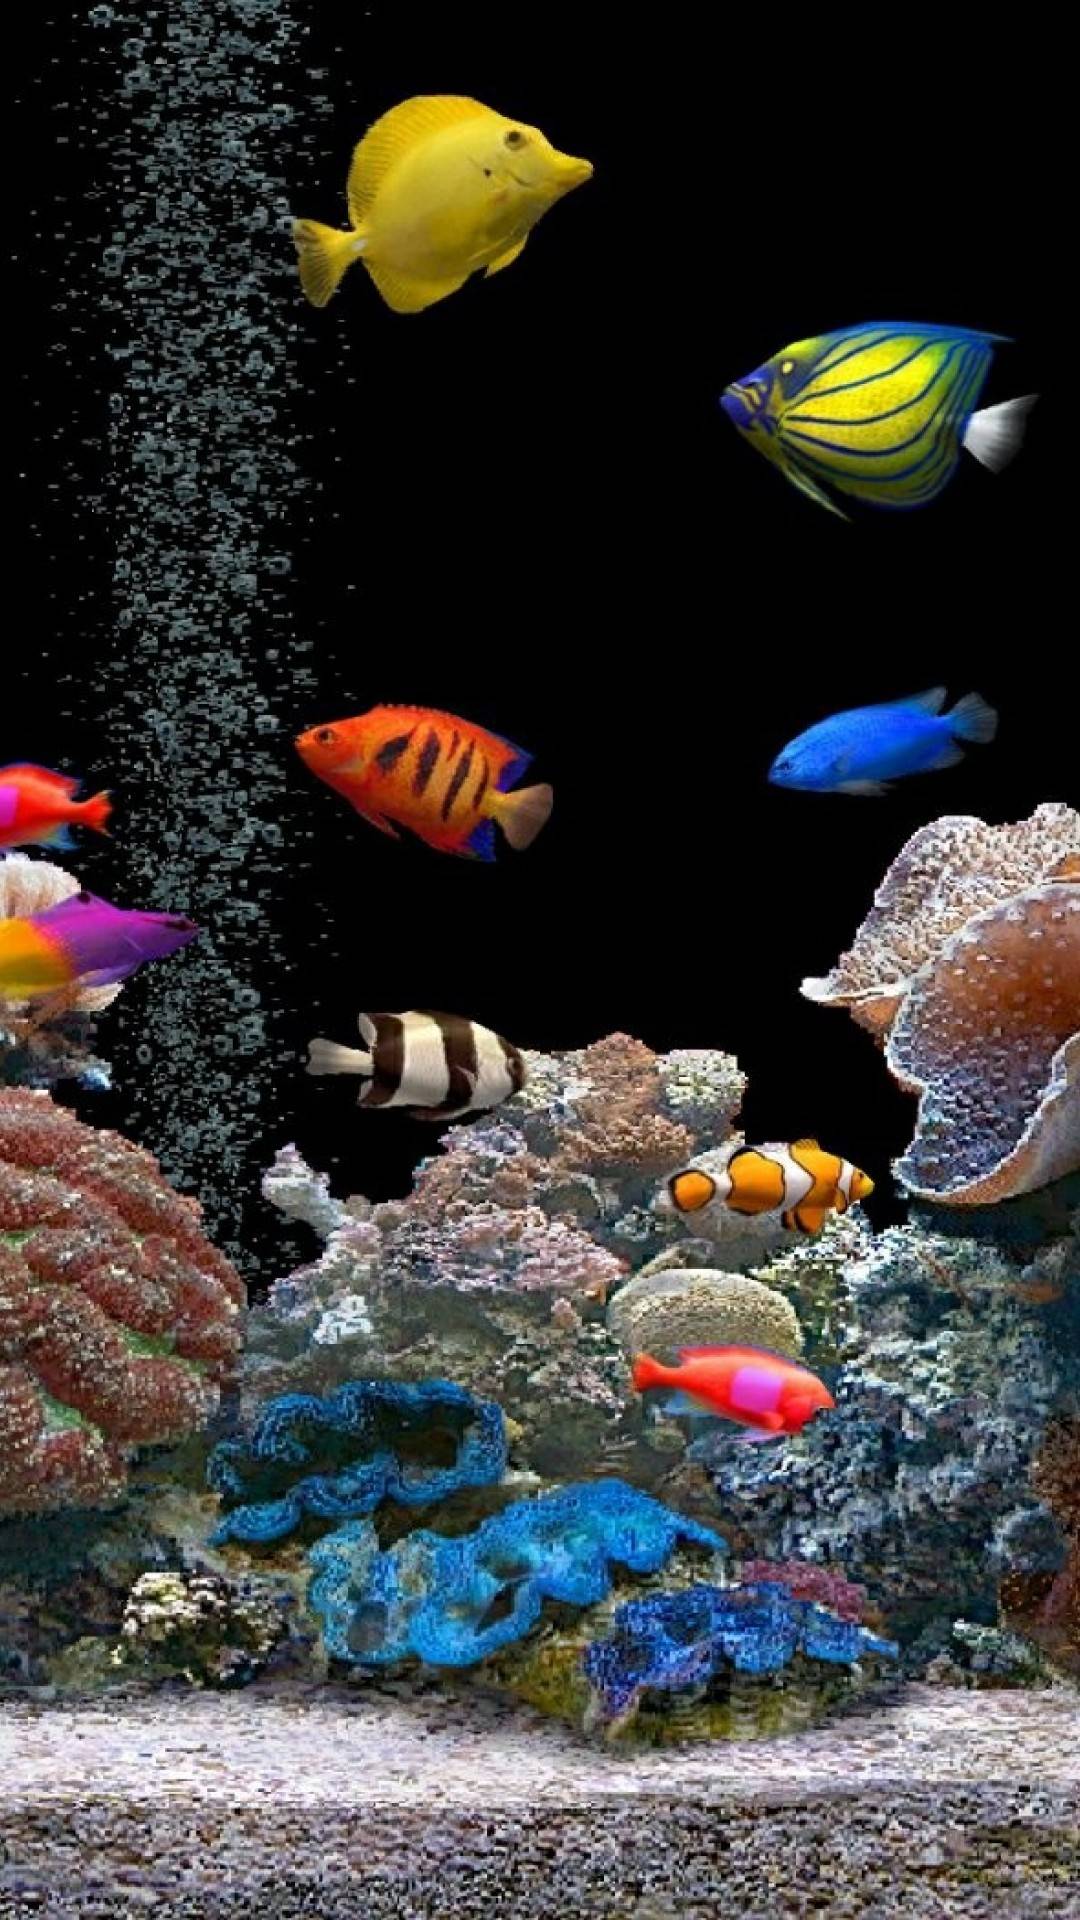  Aquarium Hintergrundbild 1080x1920. Aquarium Screensaver:Amazon.de:Appstore for Android